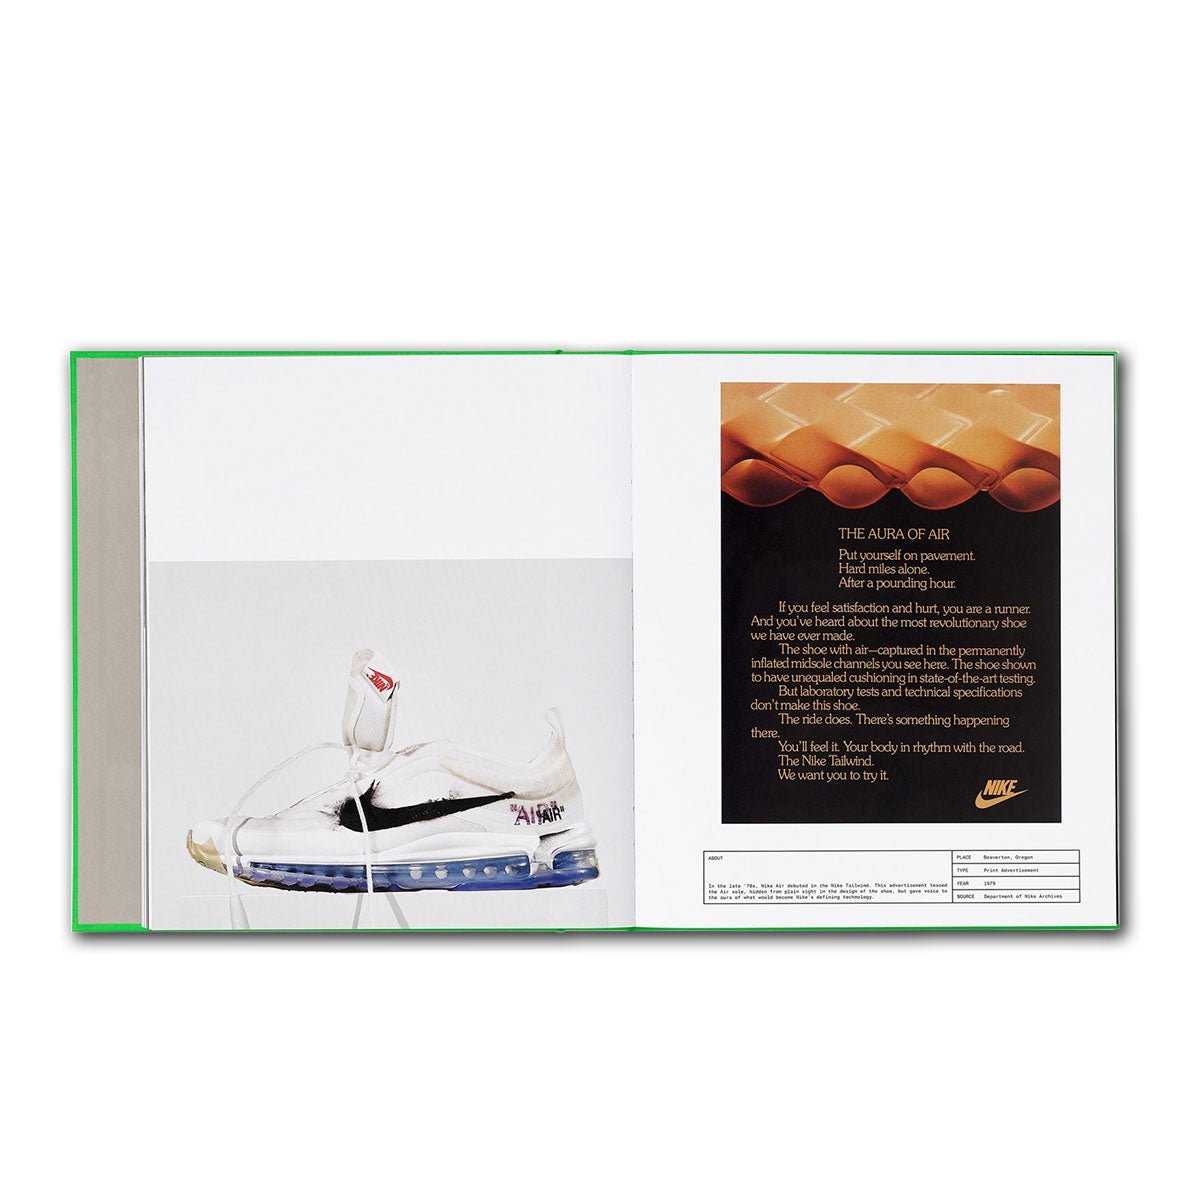 Taschen Virgil Abloh. Nike. Icons  - Allike Store